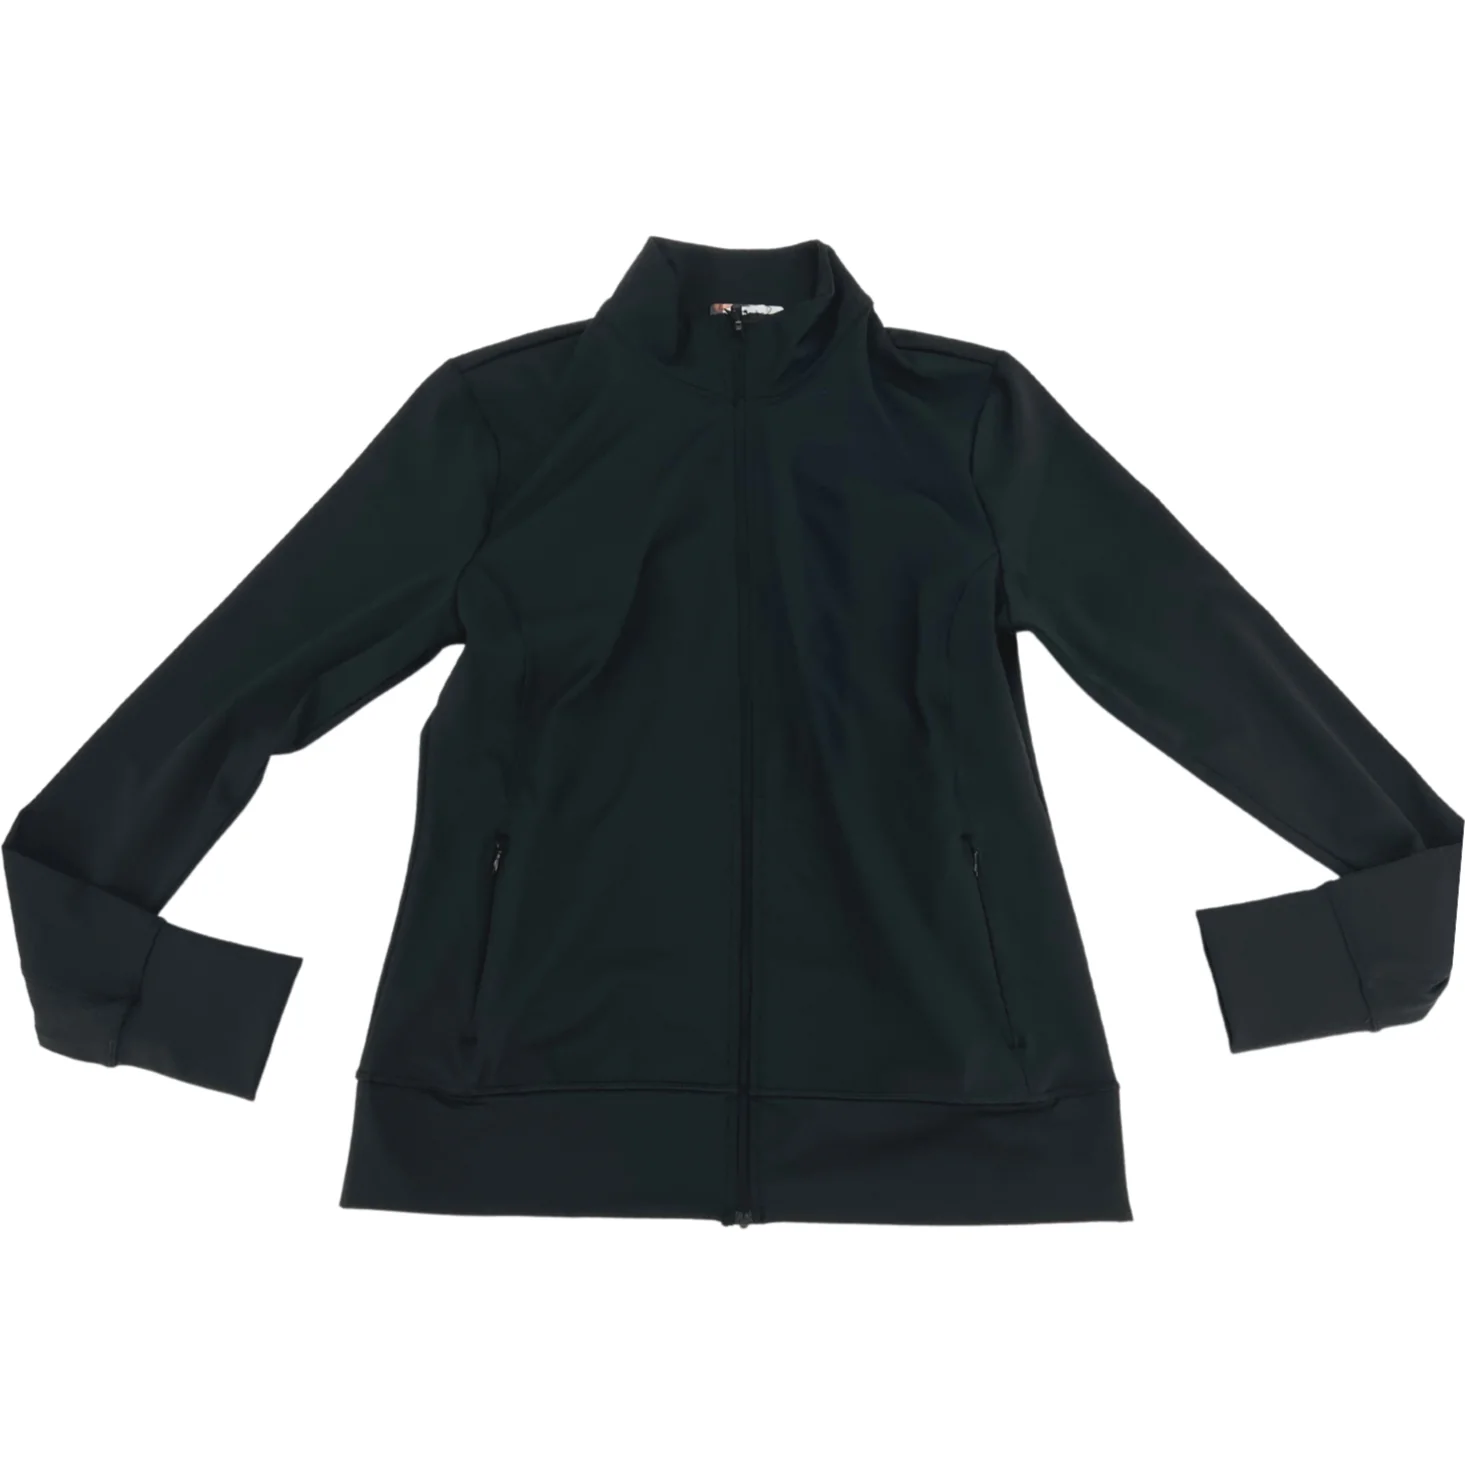 Lolë Women's Active Jacket / Activewear / Black / Size Medium